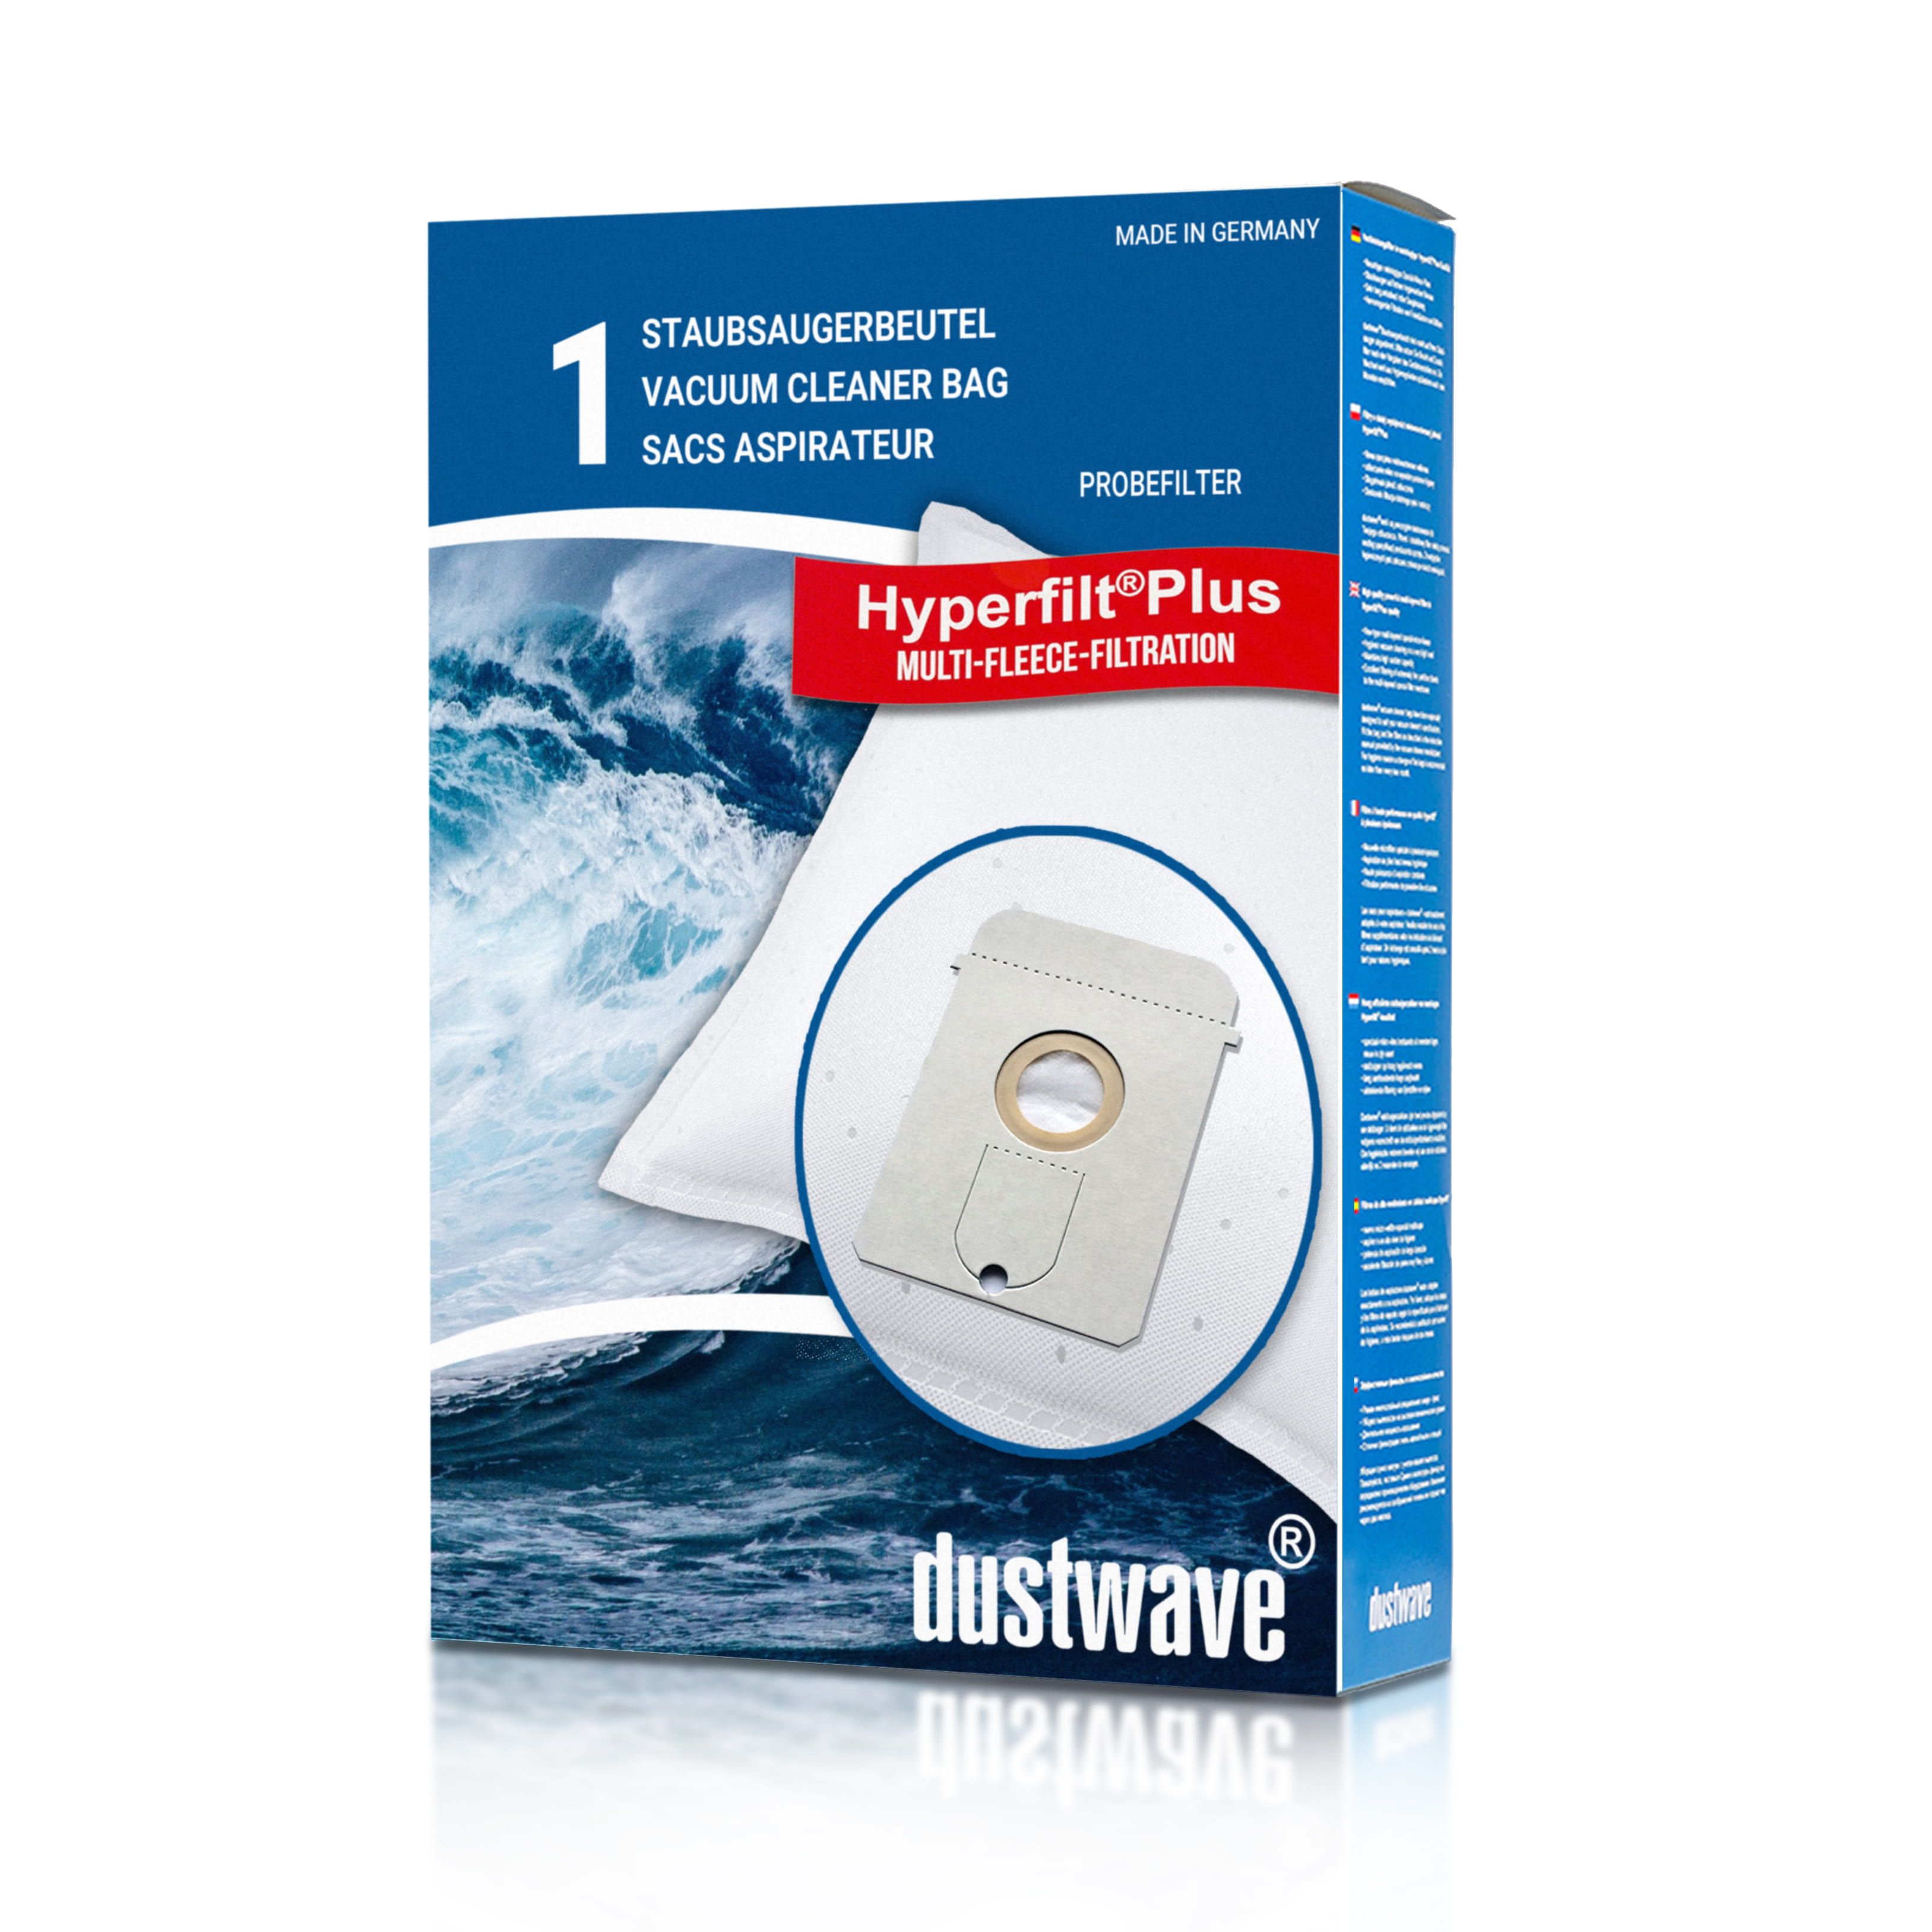 Dustwave® 1 Staubsaugerbeutel für AEG Vampyr TC Universal - hocheffizient, mehrlagiges Mikrovlies mit Hygieneverschluss - Made in Germany